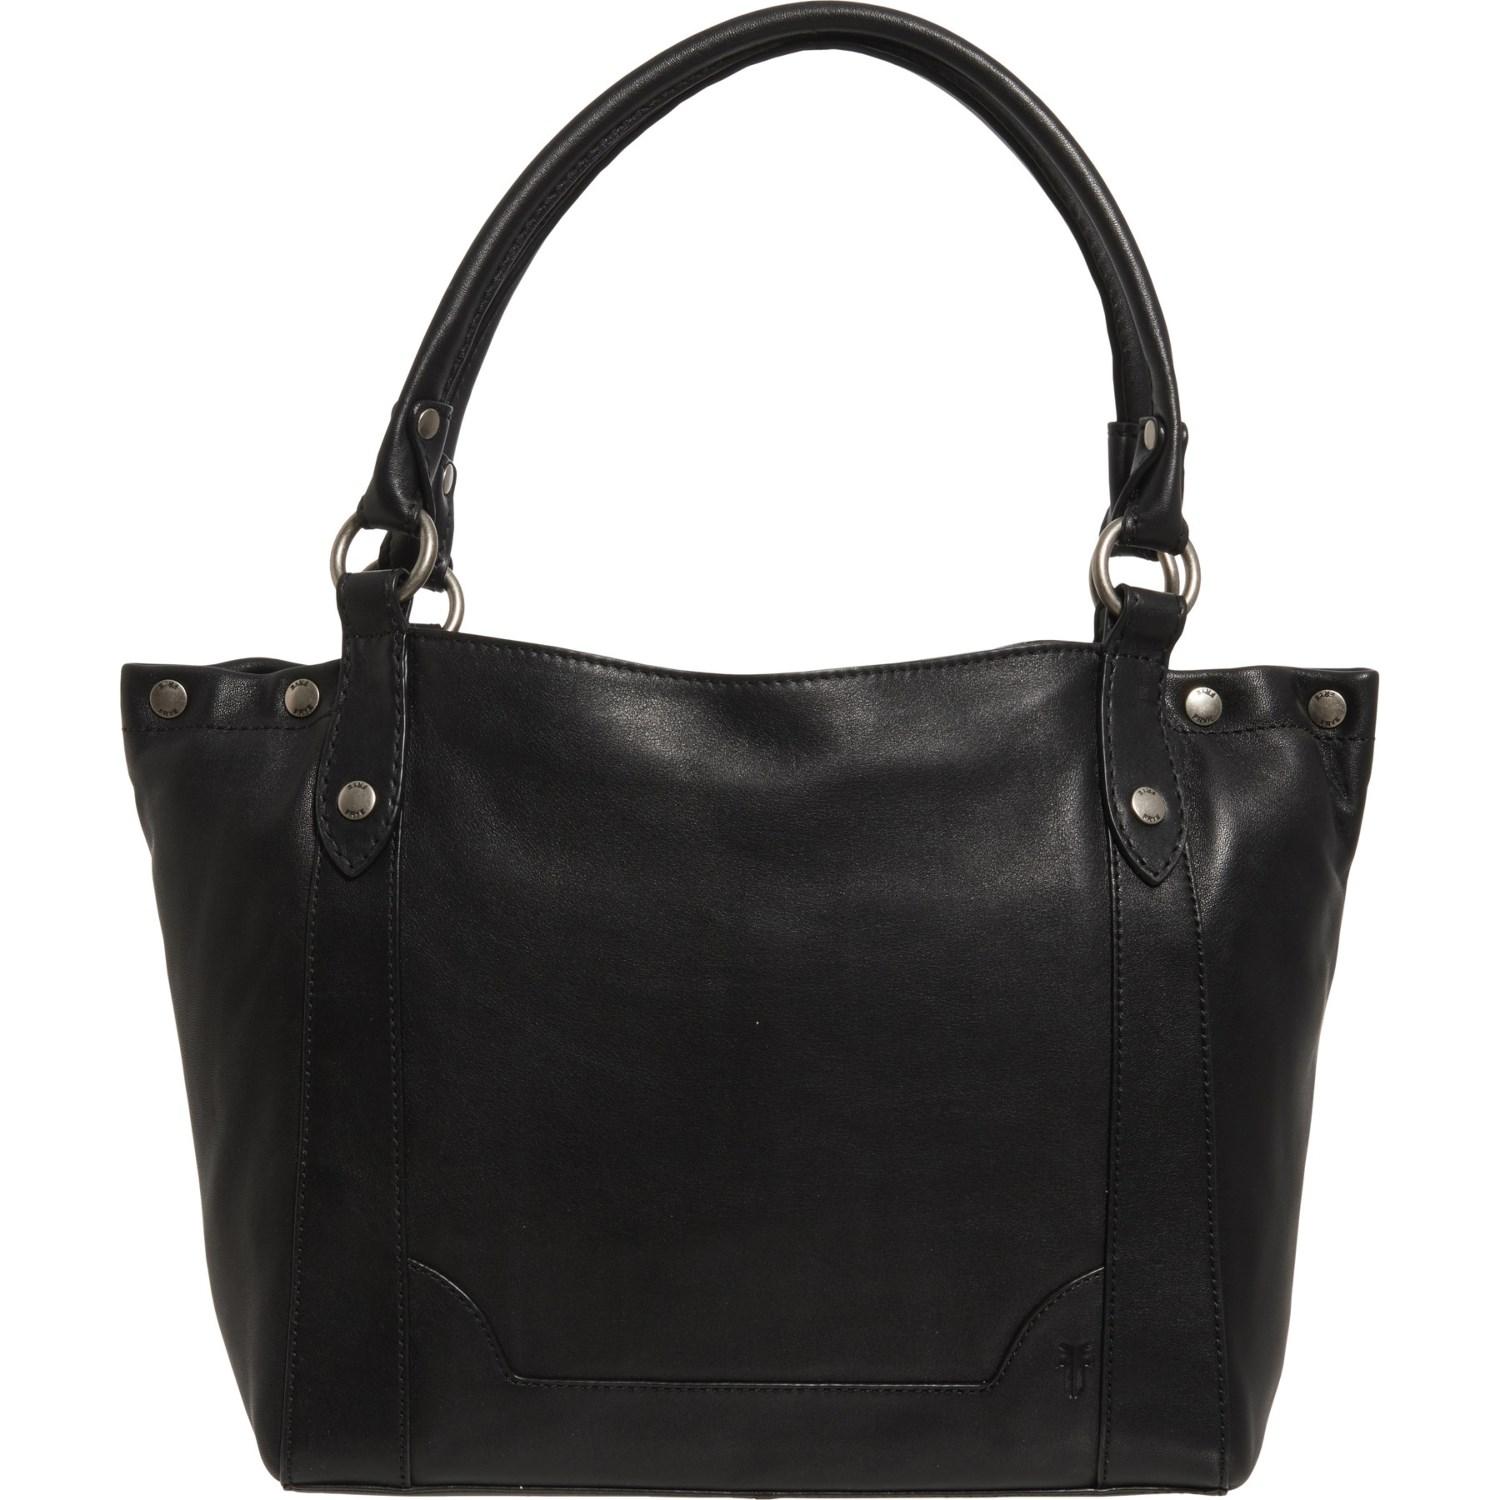 Frye Leather Melissa Shoulder Bag in Black - Lyst